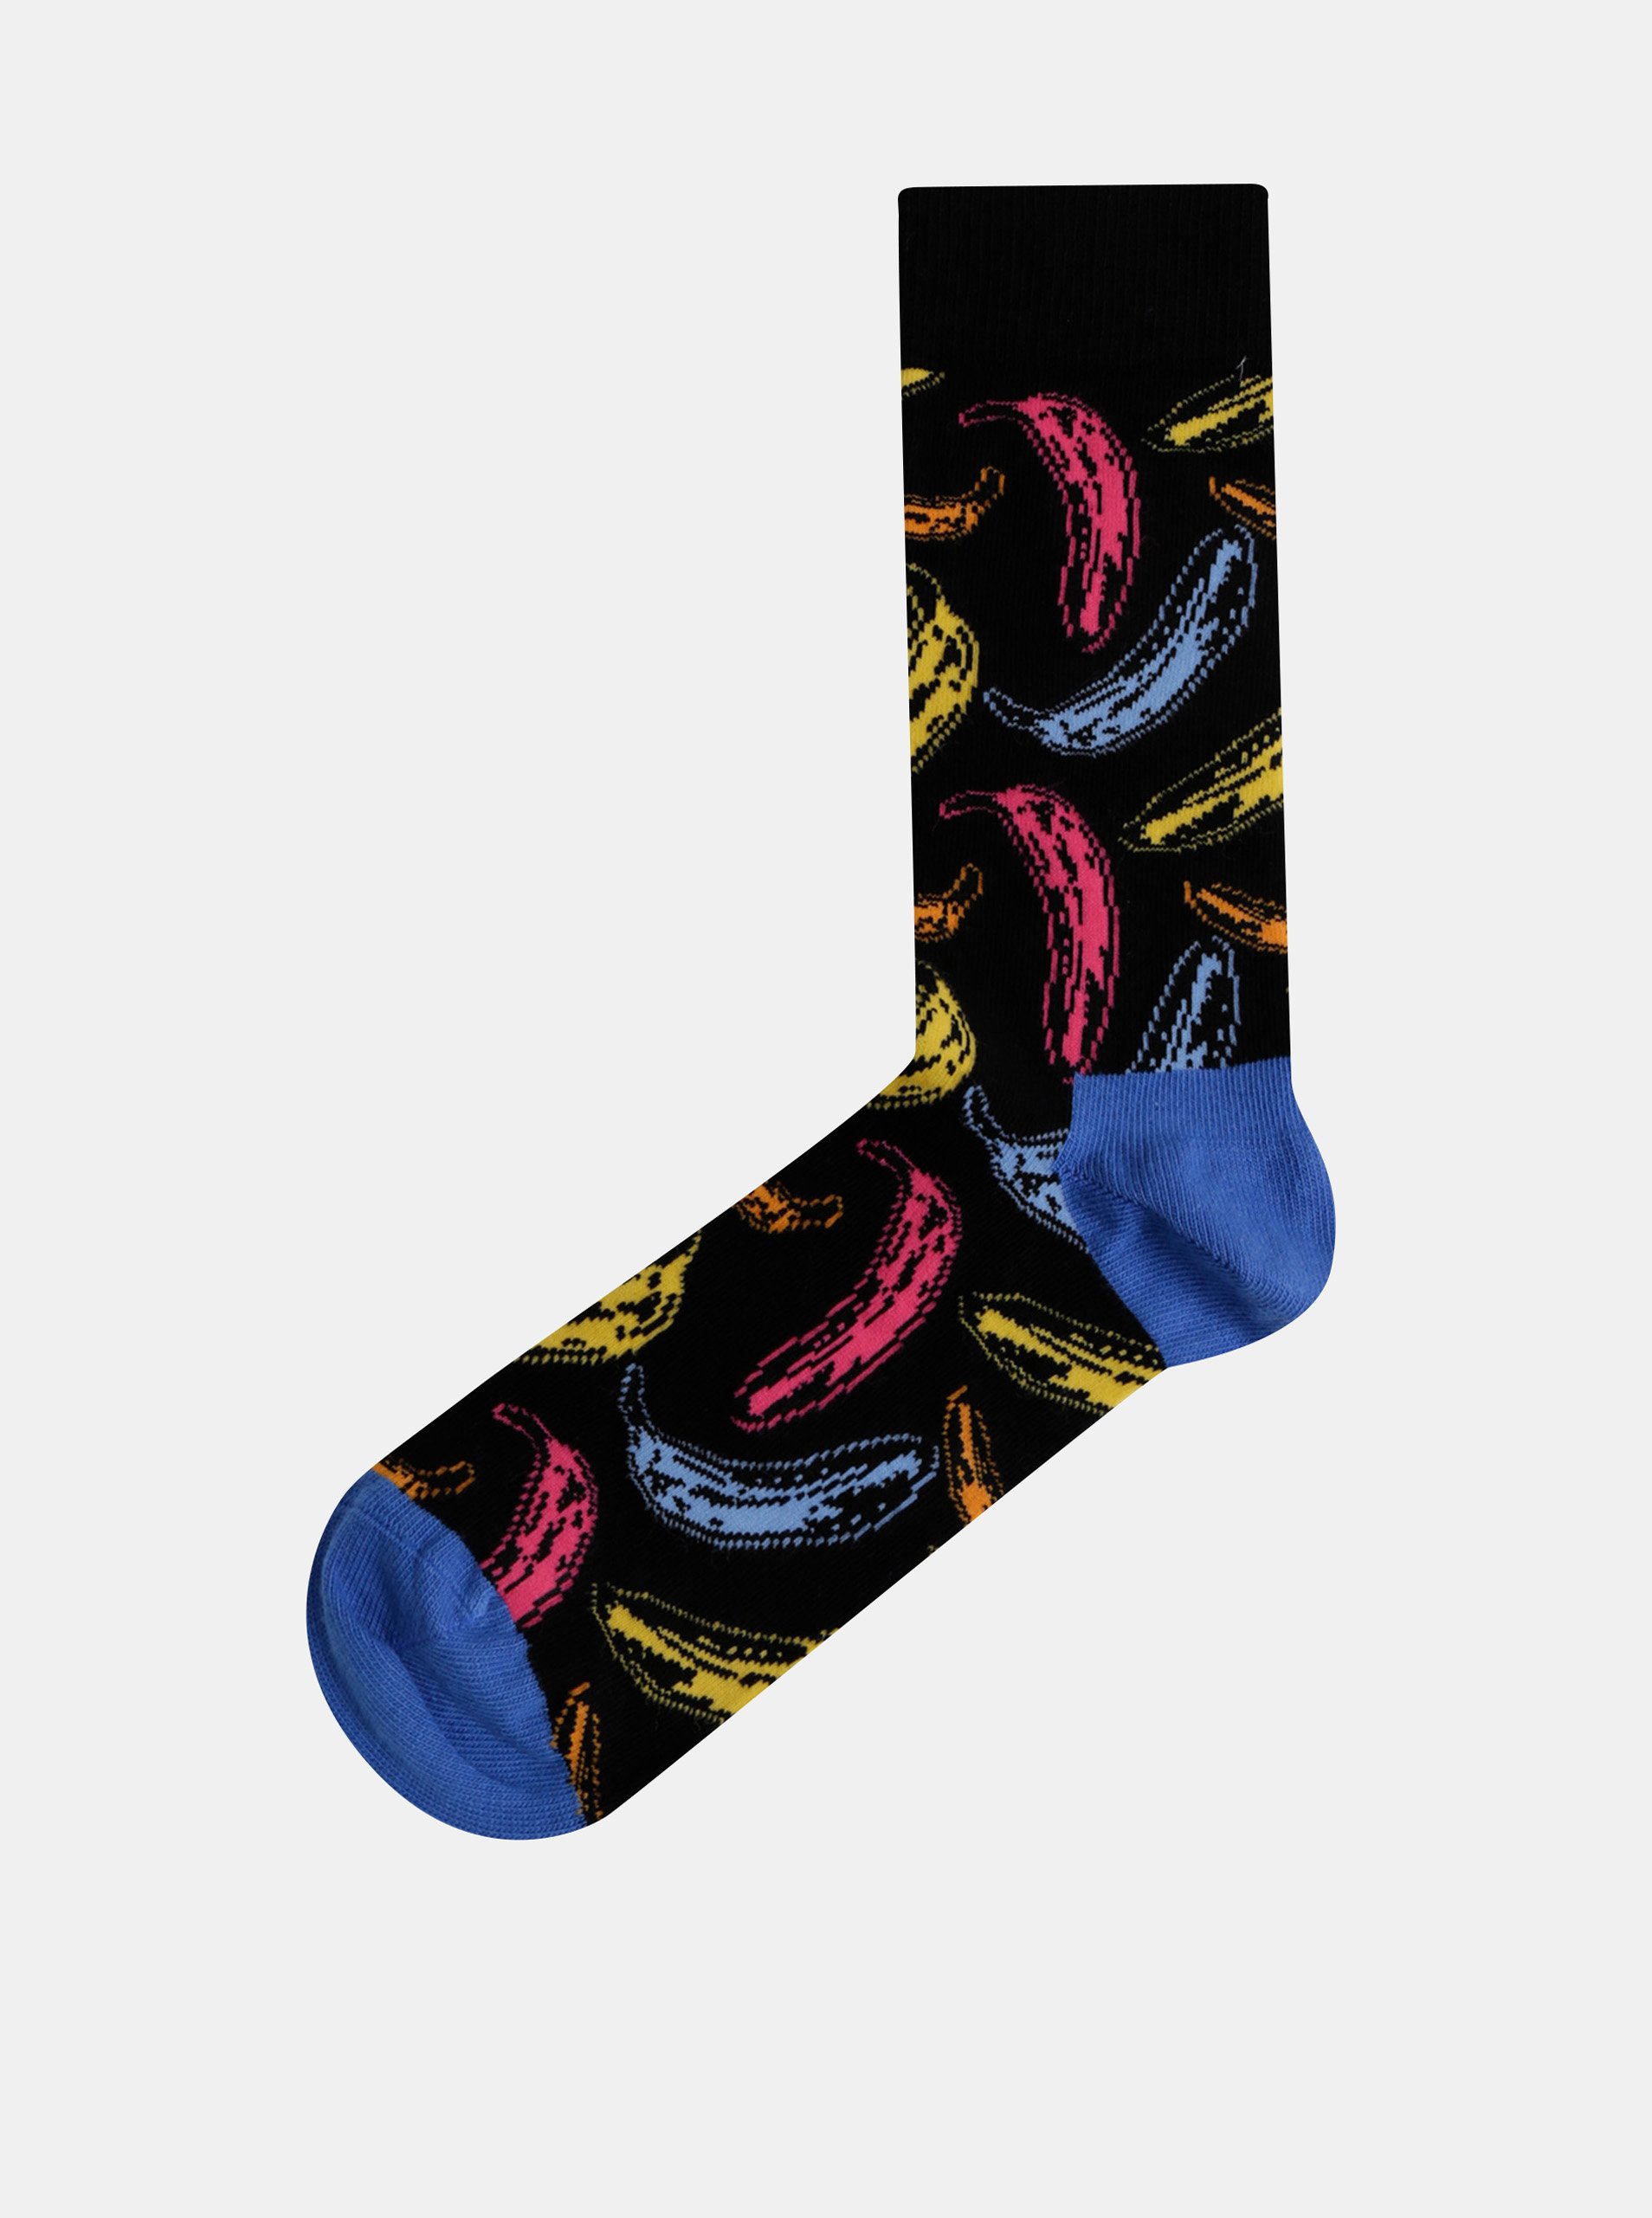 Lacno Čierne vzorované ponožky Happy Socks Andy Warhol Banana